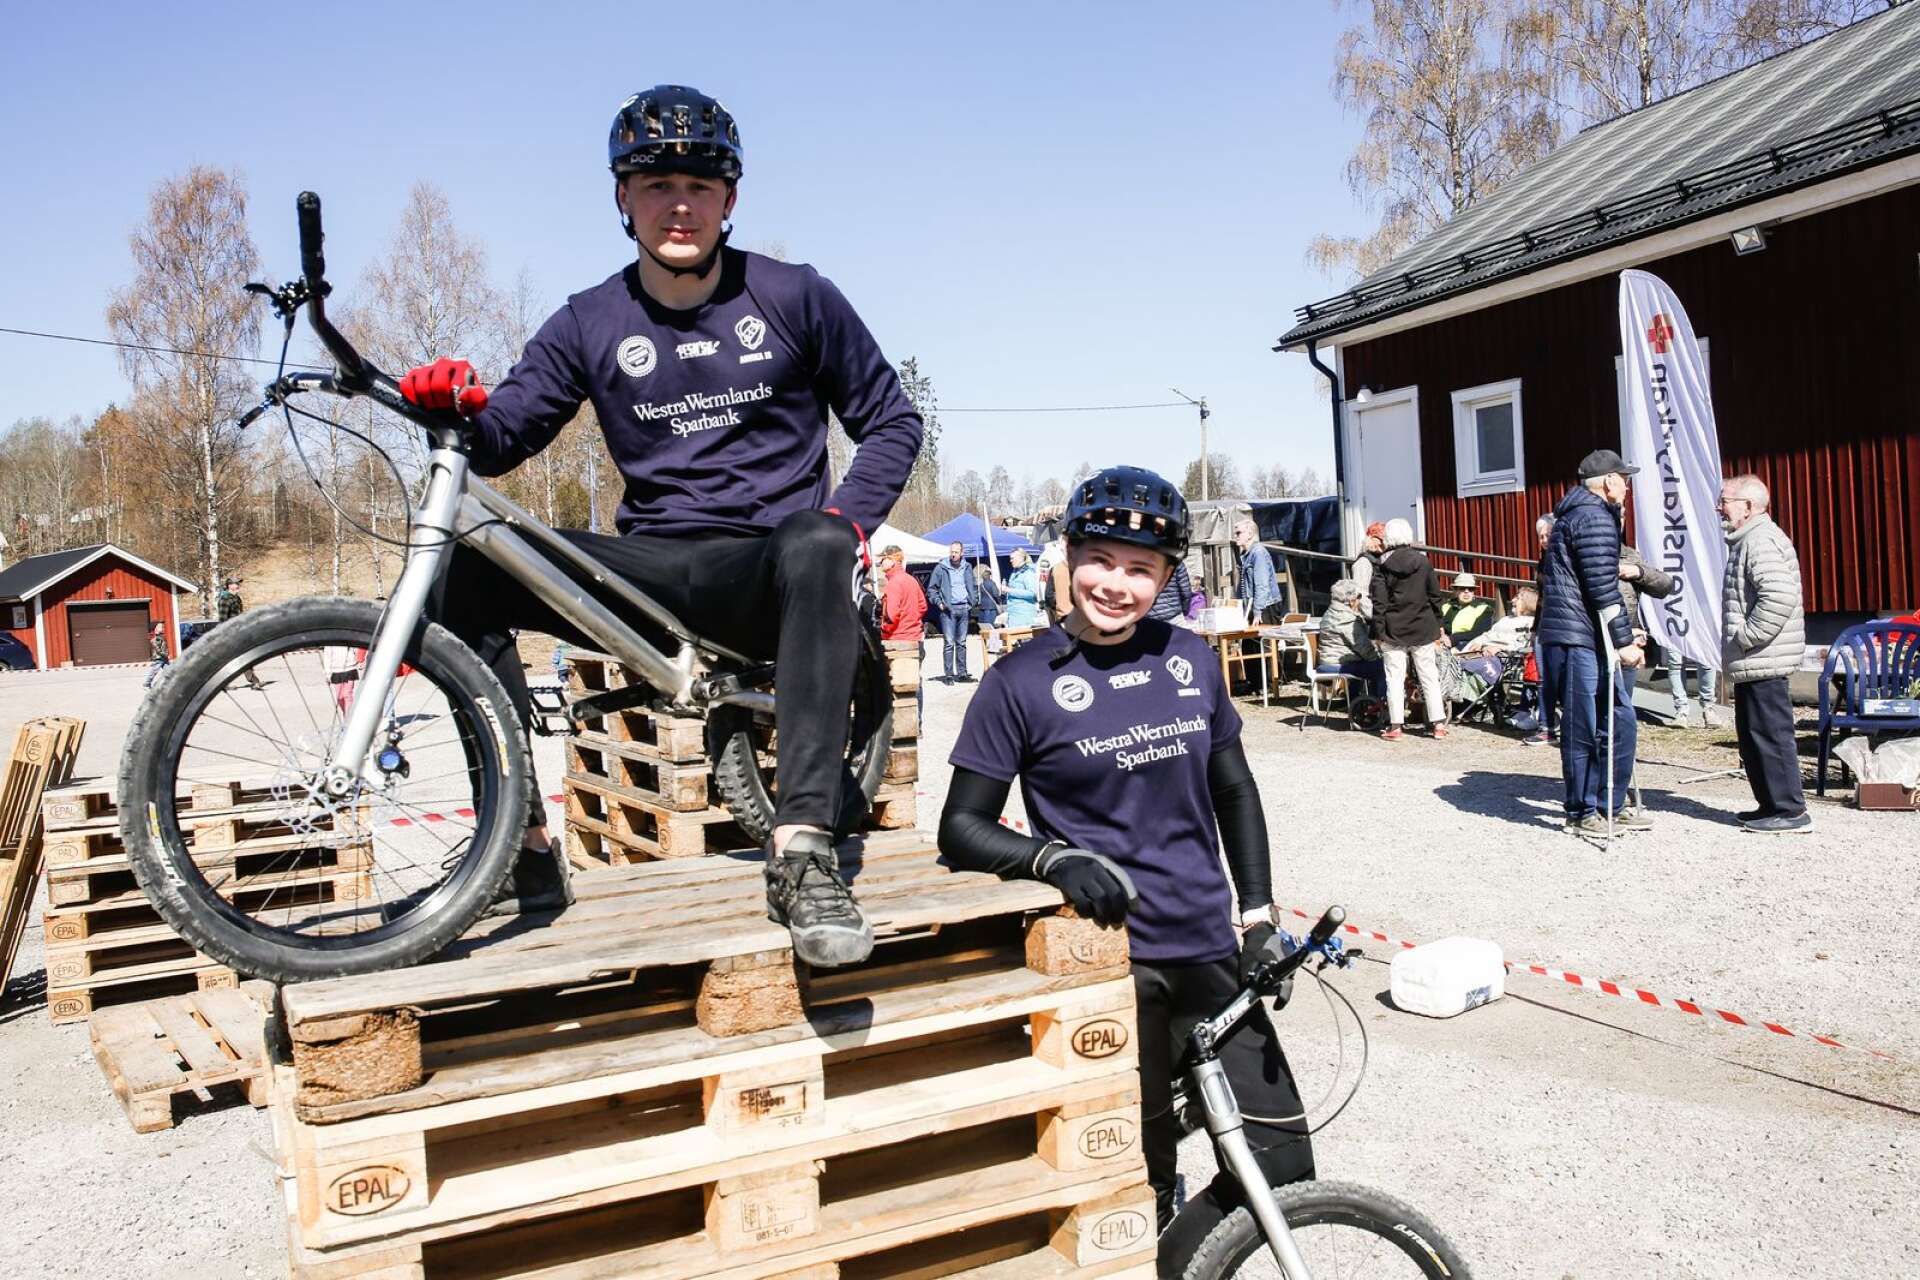 Syskonparet Hilda och Ludvig Andersson från Klässbol, trial-cyklisterna som tillhör världseliten.